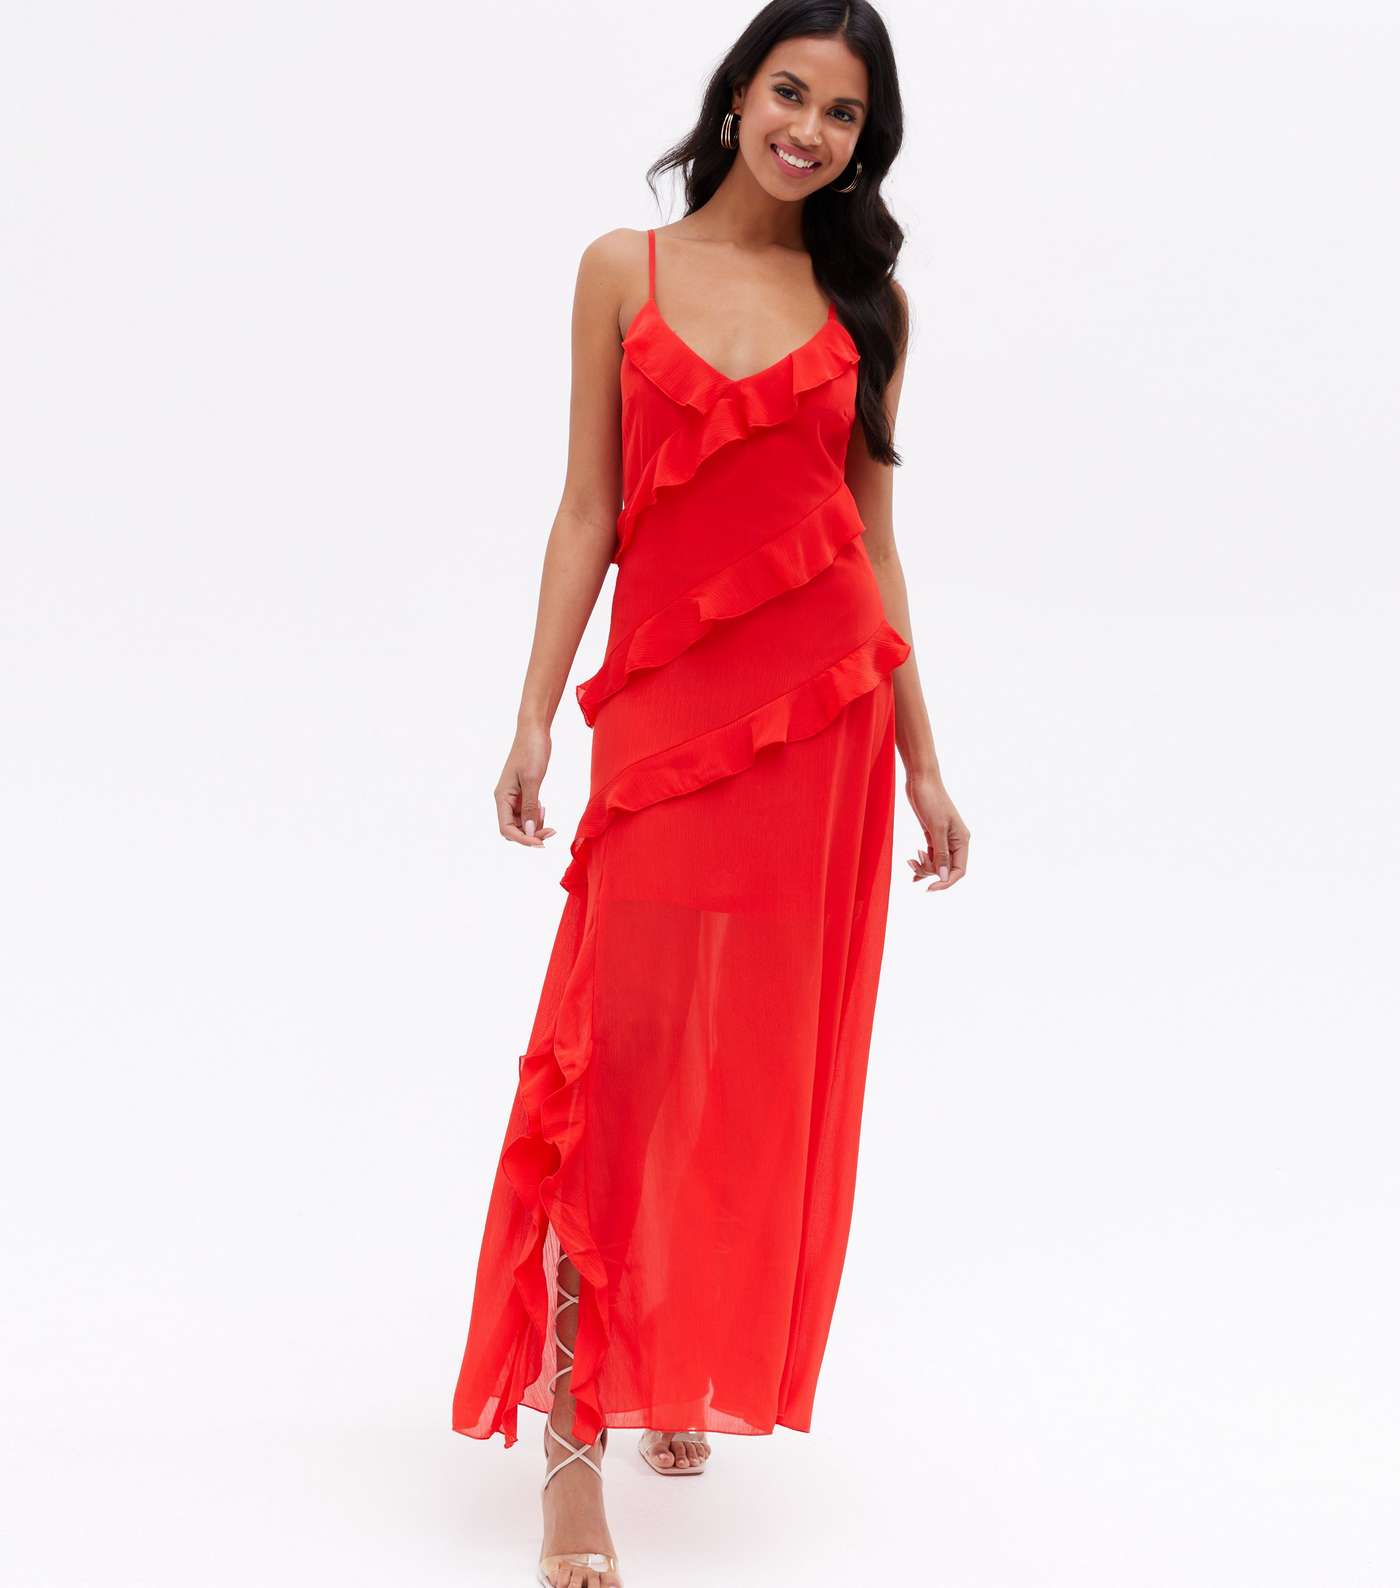 Red Chiffon Ruffle Strappy Midi Dress Image 2